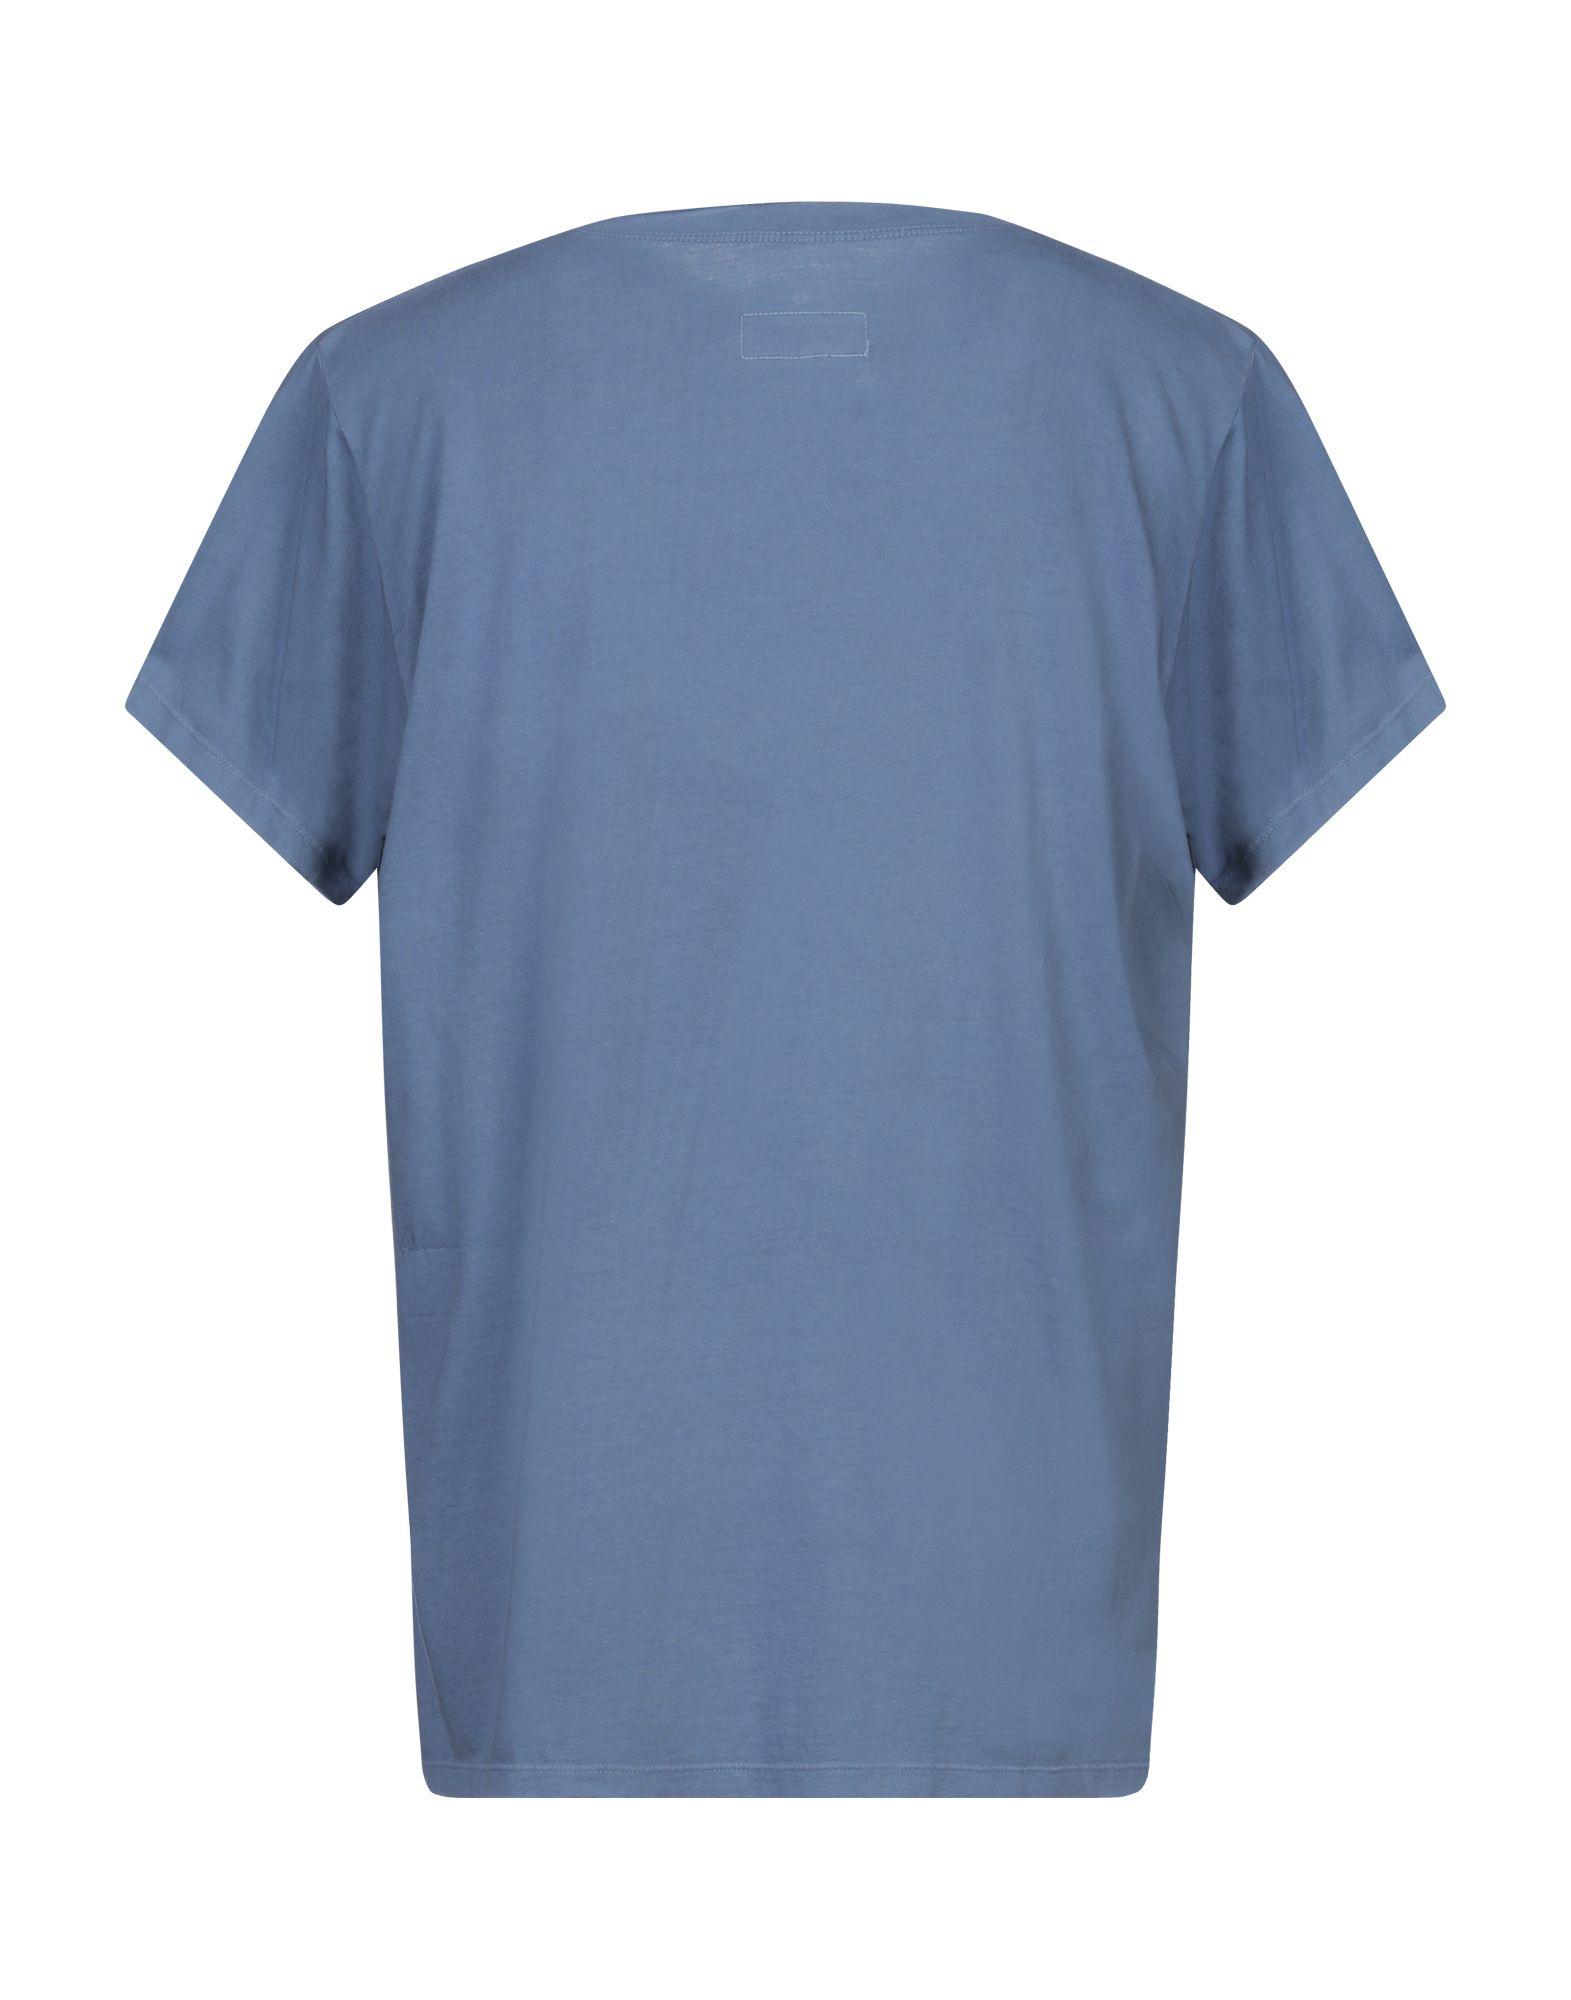 Greg Lauren Cotton Logo Print T-shirt in Slate Blue (Blue) for Men - Lyst